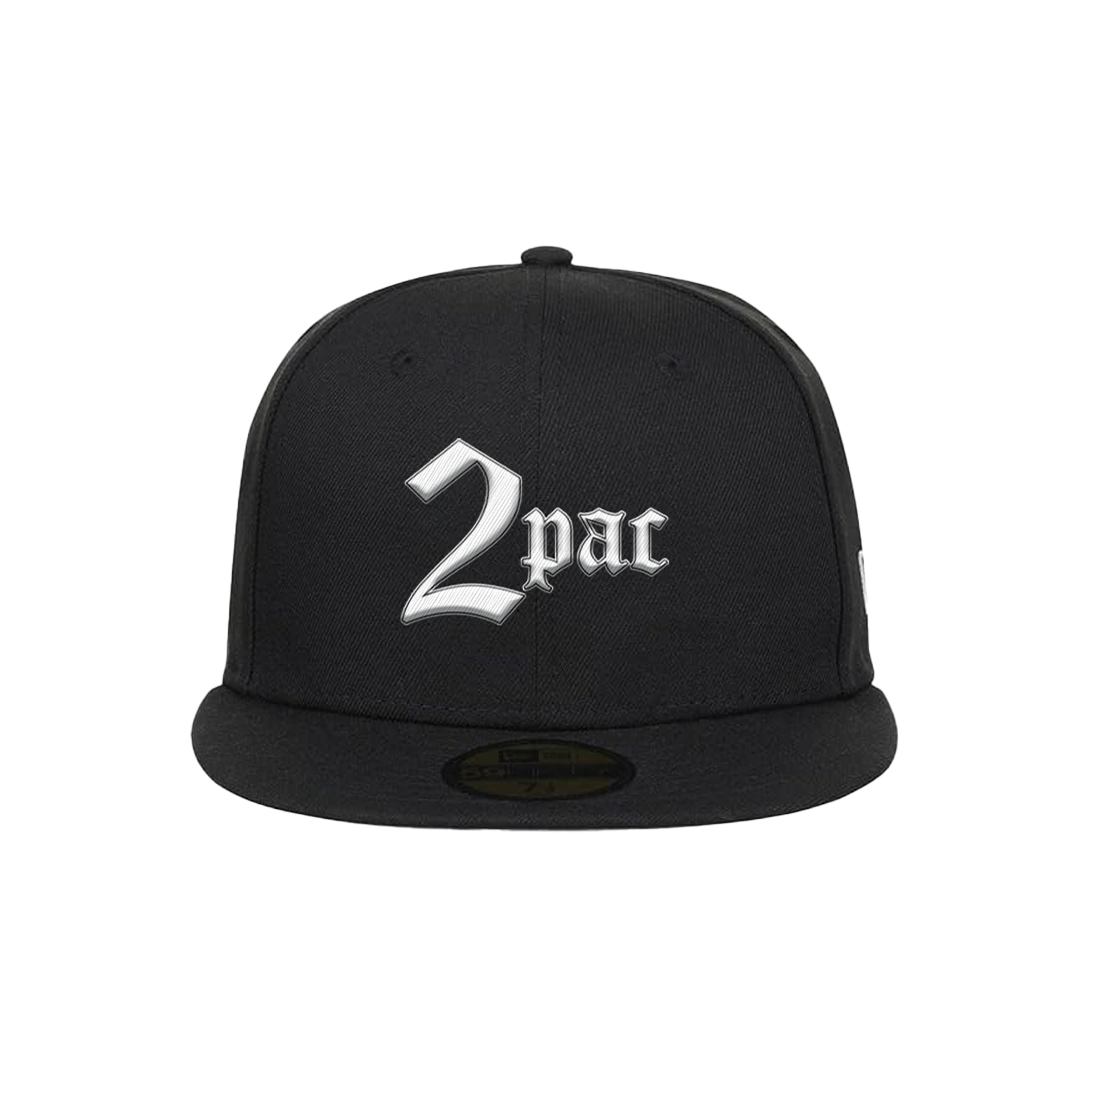 2Pac - 2Pac New Era Hat